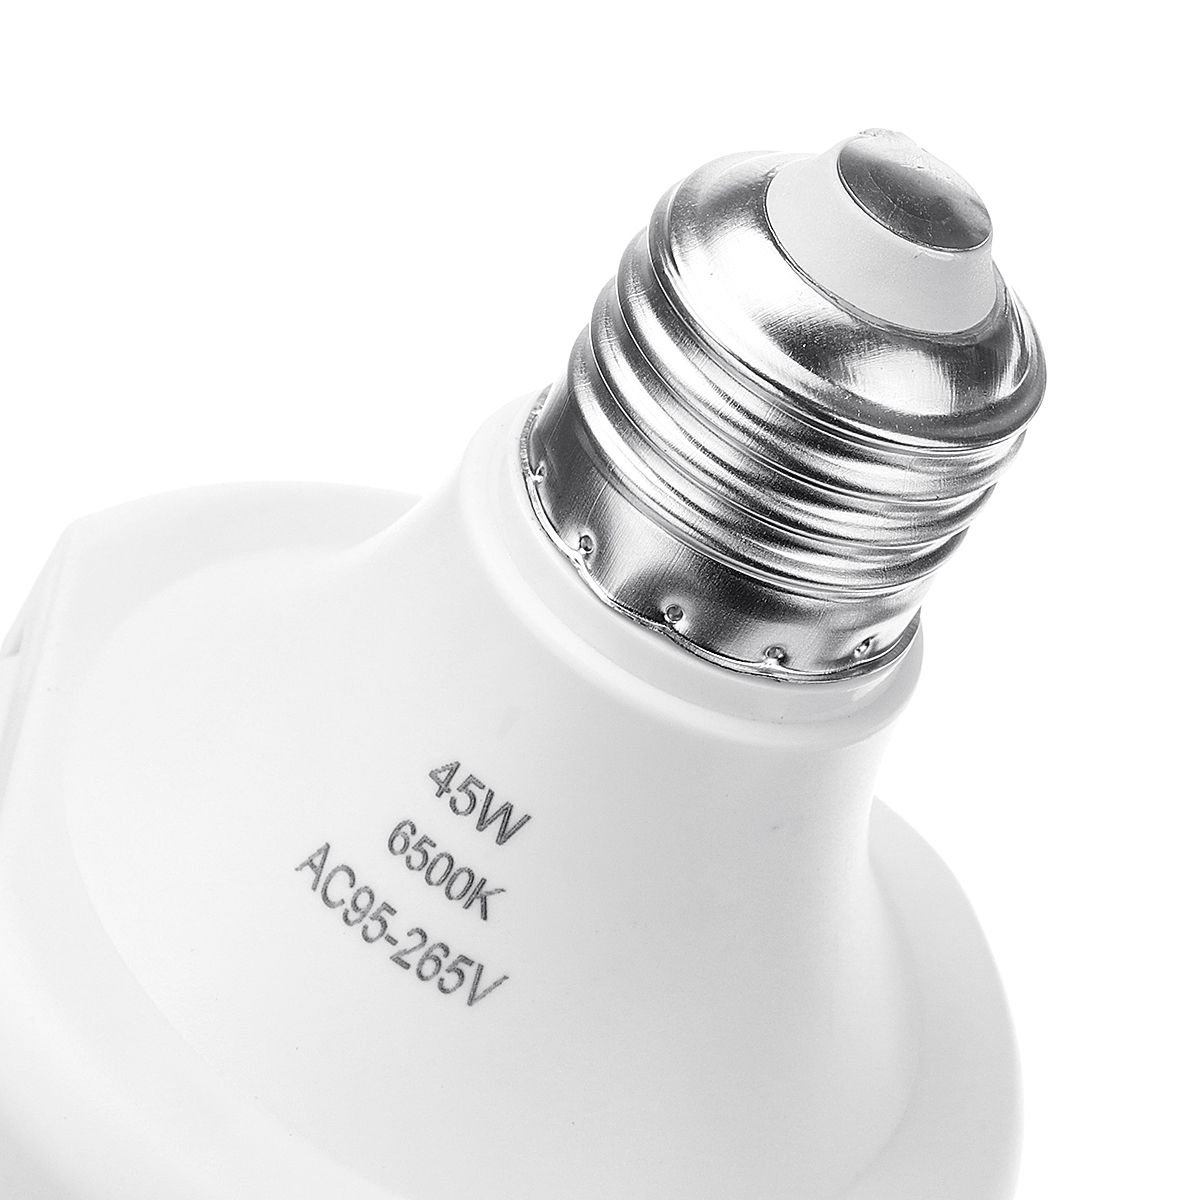 36W-45W-3Blades-Folding-E27-Motion-Sensor-LED-Bulb-Pendant-Lamp-Decor-AC95-265V-1636885